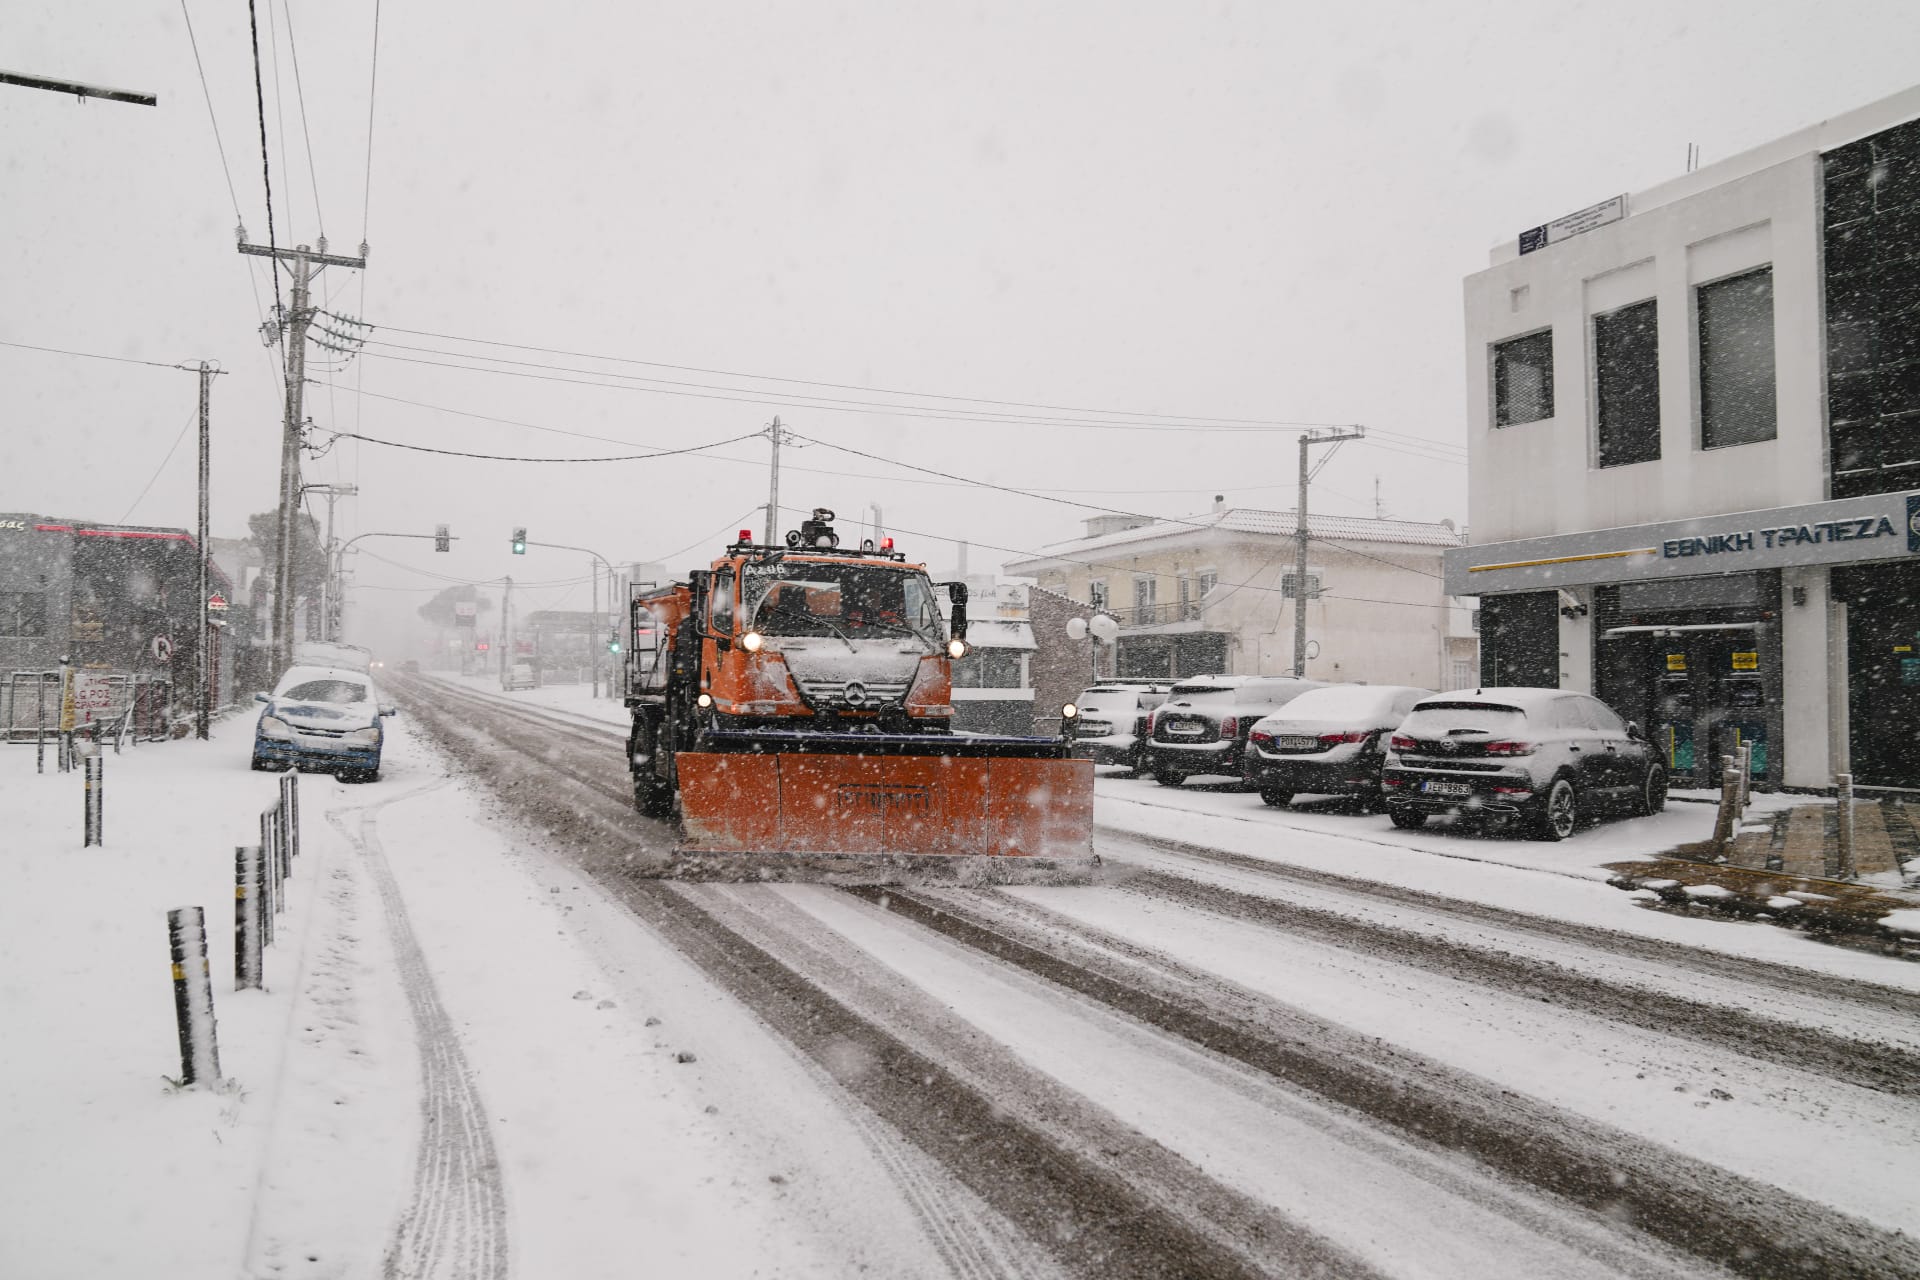 Řekové mají se sněhem plné ruce práce. Snímek je z města Ajos Stefanos poblíž Atén.